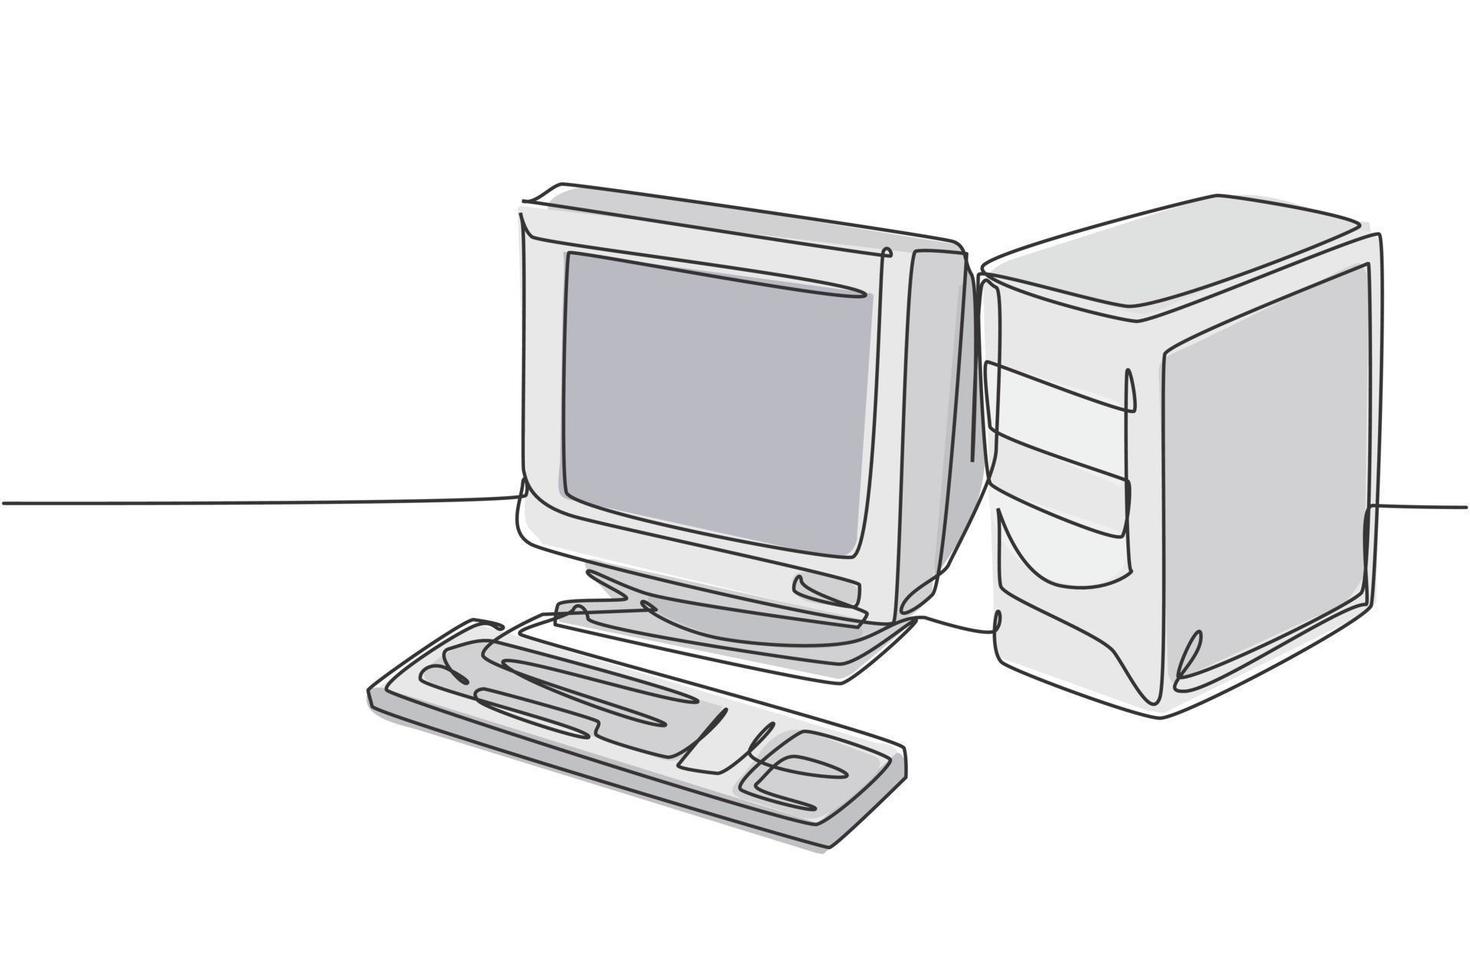 dibujo de línea continua única de la unidad de procesador de computadora personal clásica antigua retro. CPU vintage con monitor analógico y concepto de elemento de teclado gráfico de ilustración de vector de diseño de dibujo de una línea